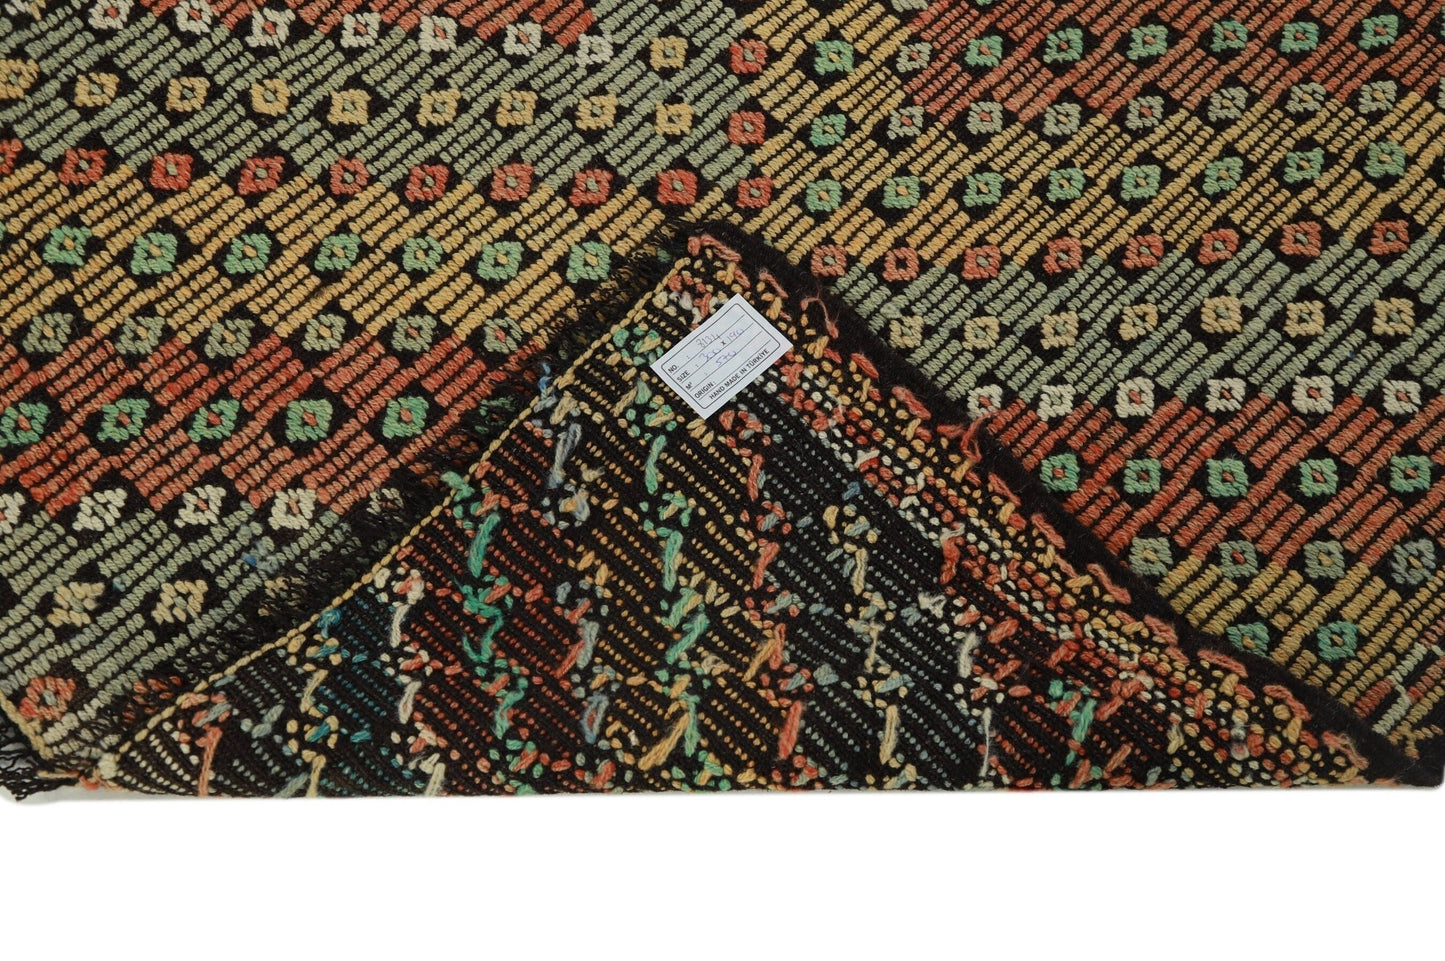 Vintage Kilim 6x9, Turkish Kilim Rug, Area Unique Kilim Rug, Handmade Muted Kilim Rug, Farmhouse Decor, Bedroom Rug, Rug Kilim, 8134